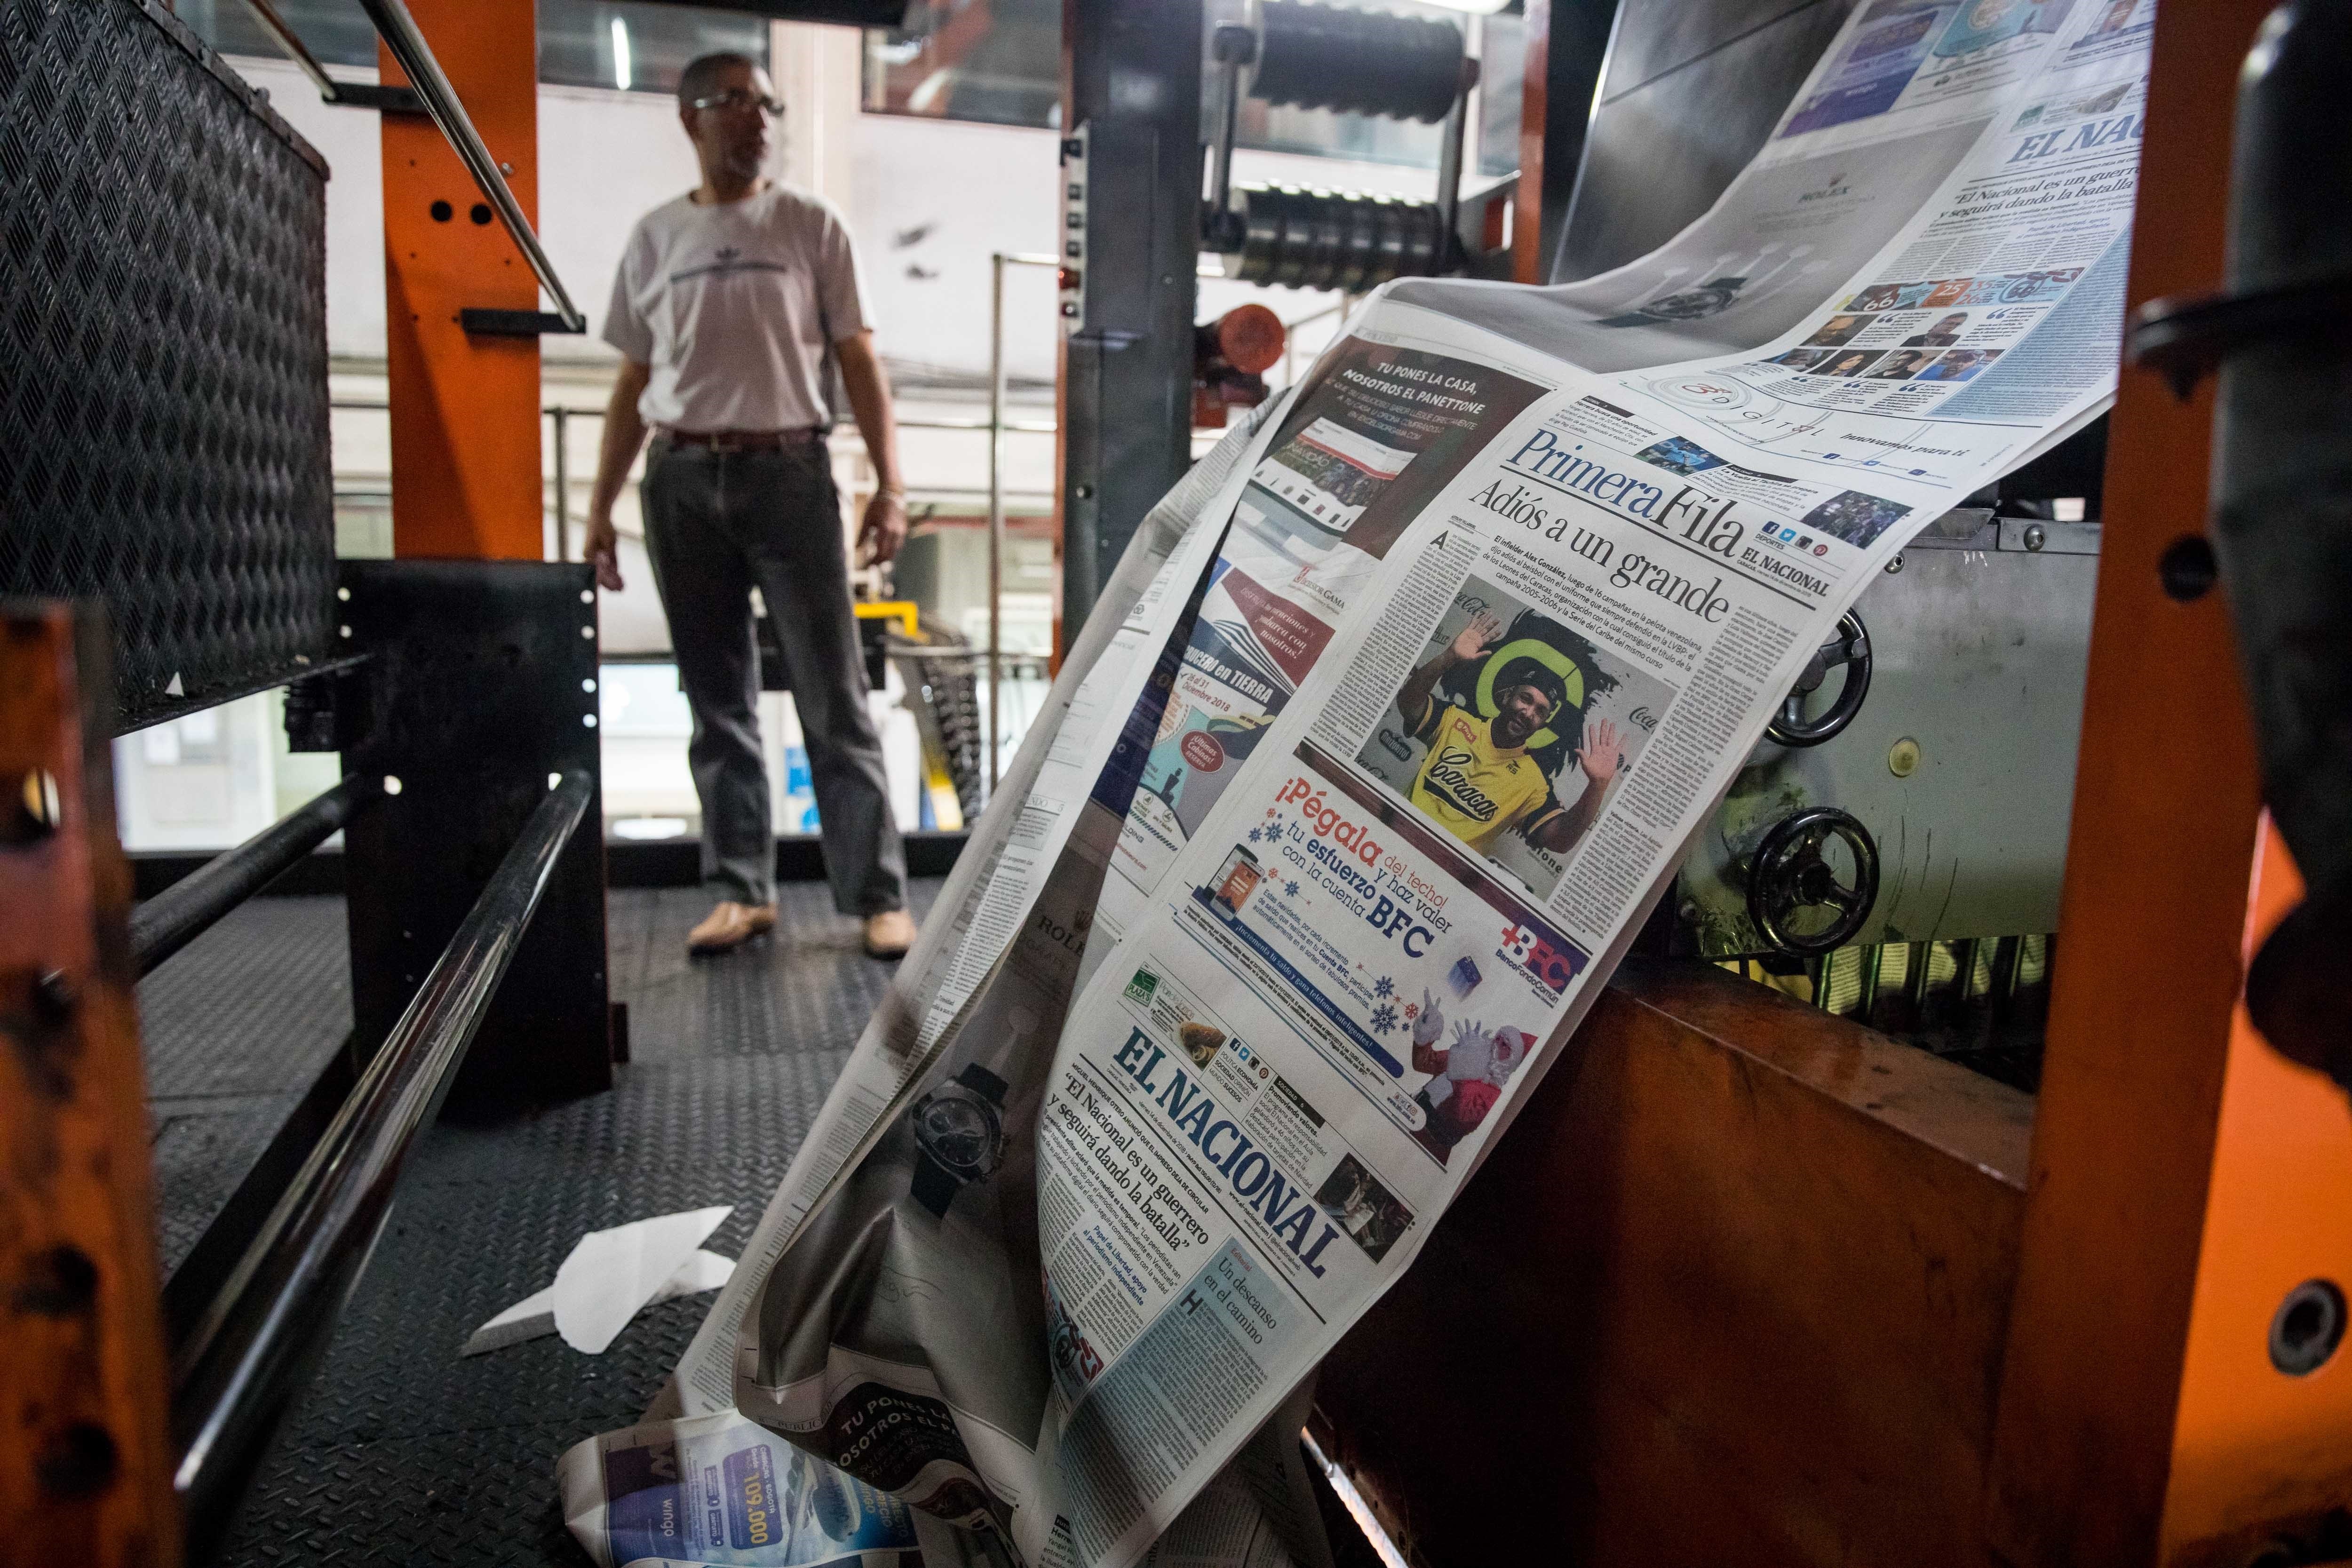 Vista de maquinas rotativas, donde se imprime el diario El Nacional, en Caracas (Venezuela). EFE/ Miguel Gutiérrez/Archivo
